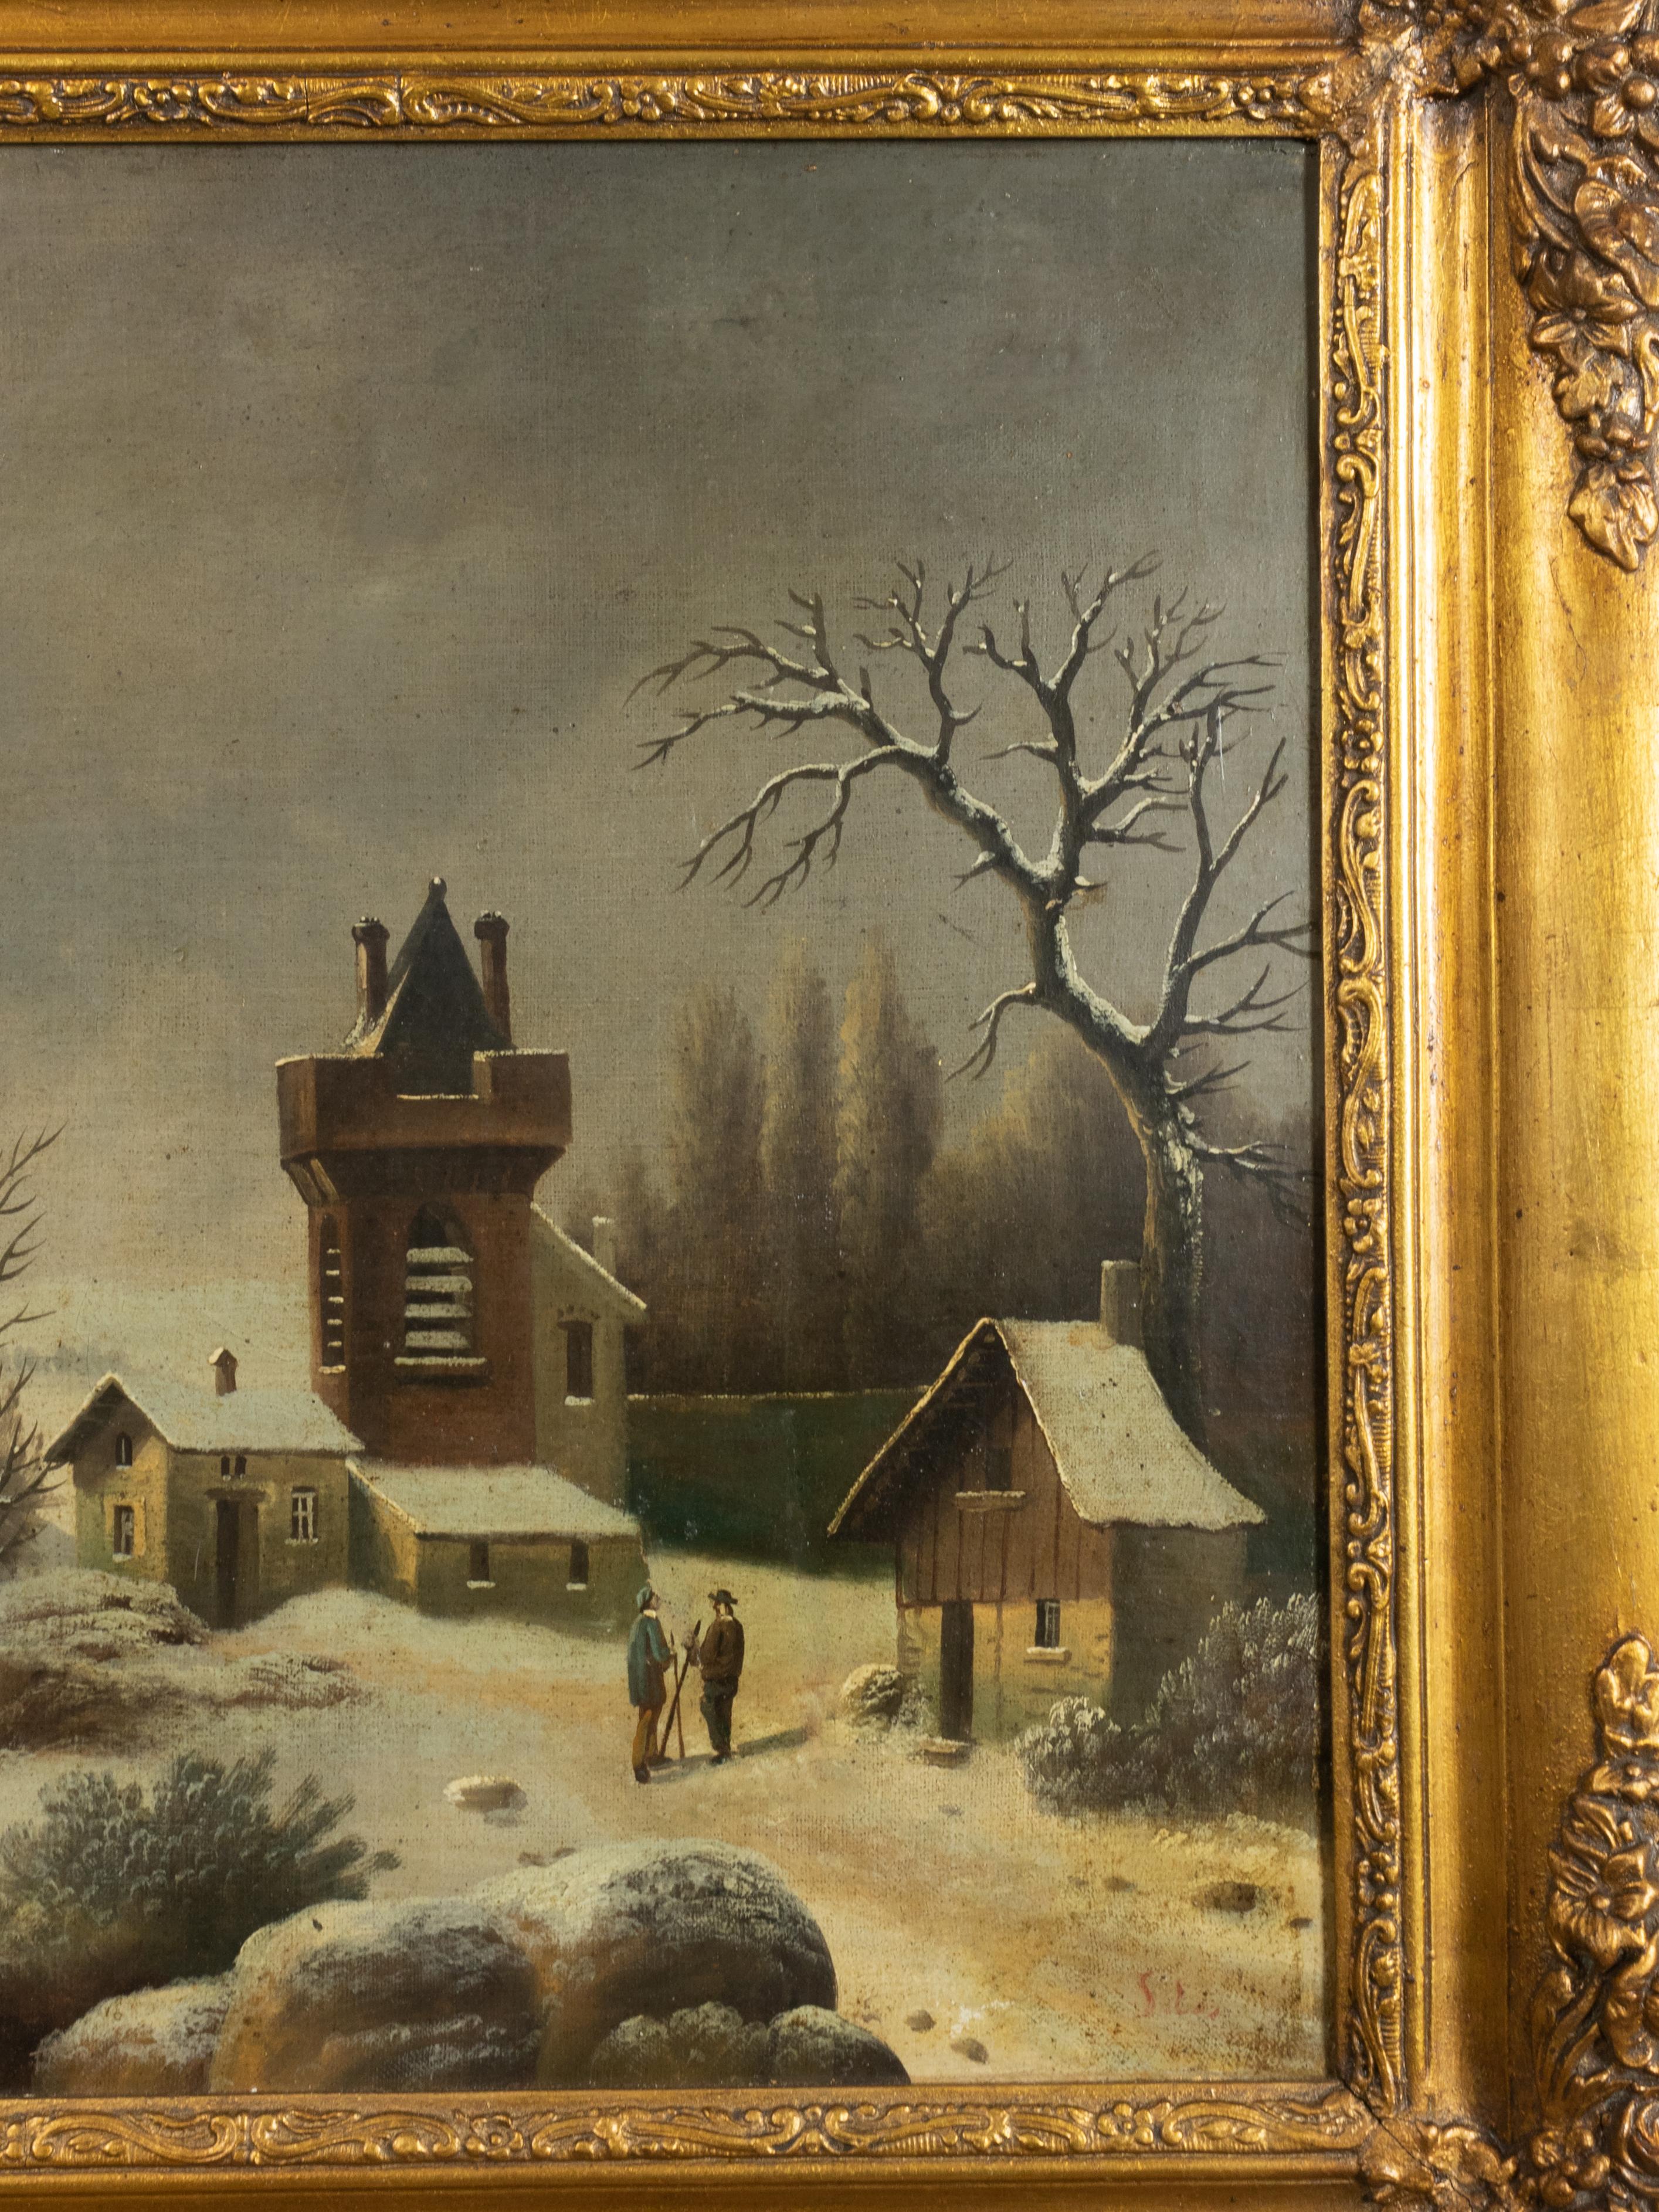 Une évocation sombre et remarquable de la peinture d'hiver flamande, de style baroque, représentant un groupe de personnes se promenant au bord d'une rivière, entourées d'un paysage aride et glacial. L'ambiance de la composition est mélancolique,